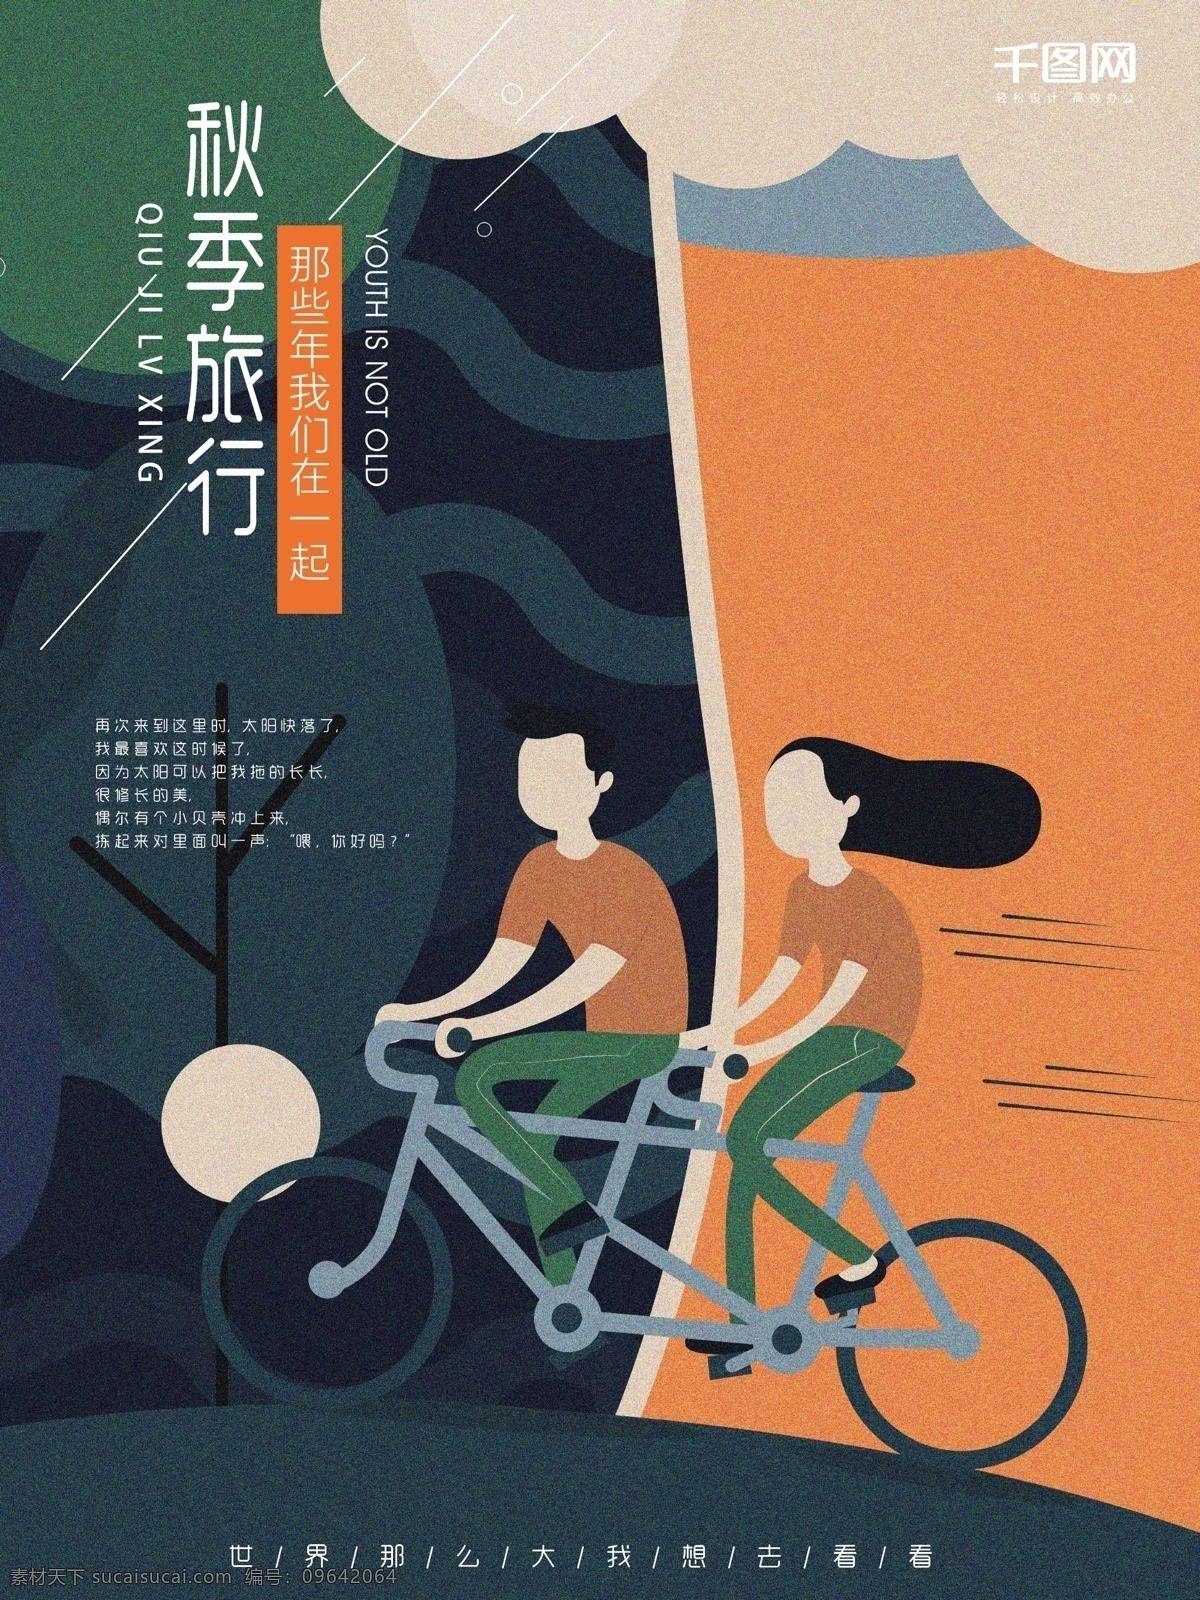 秋季 旅行 人物 单车 扁平 插画 海报 模板 简约 背景 骑车